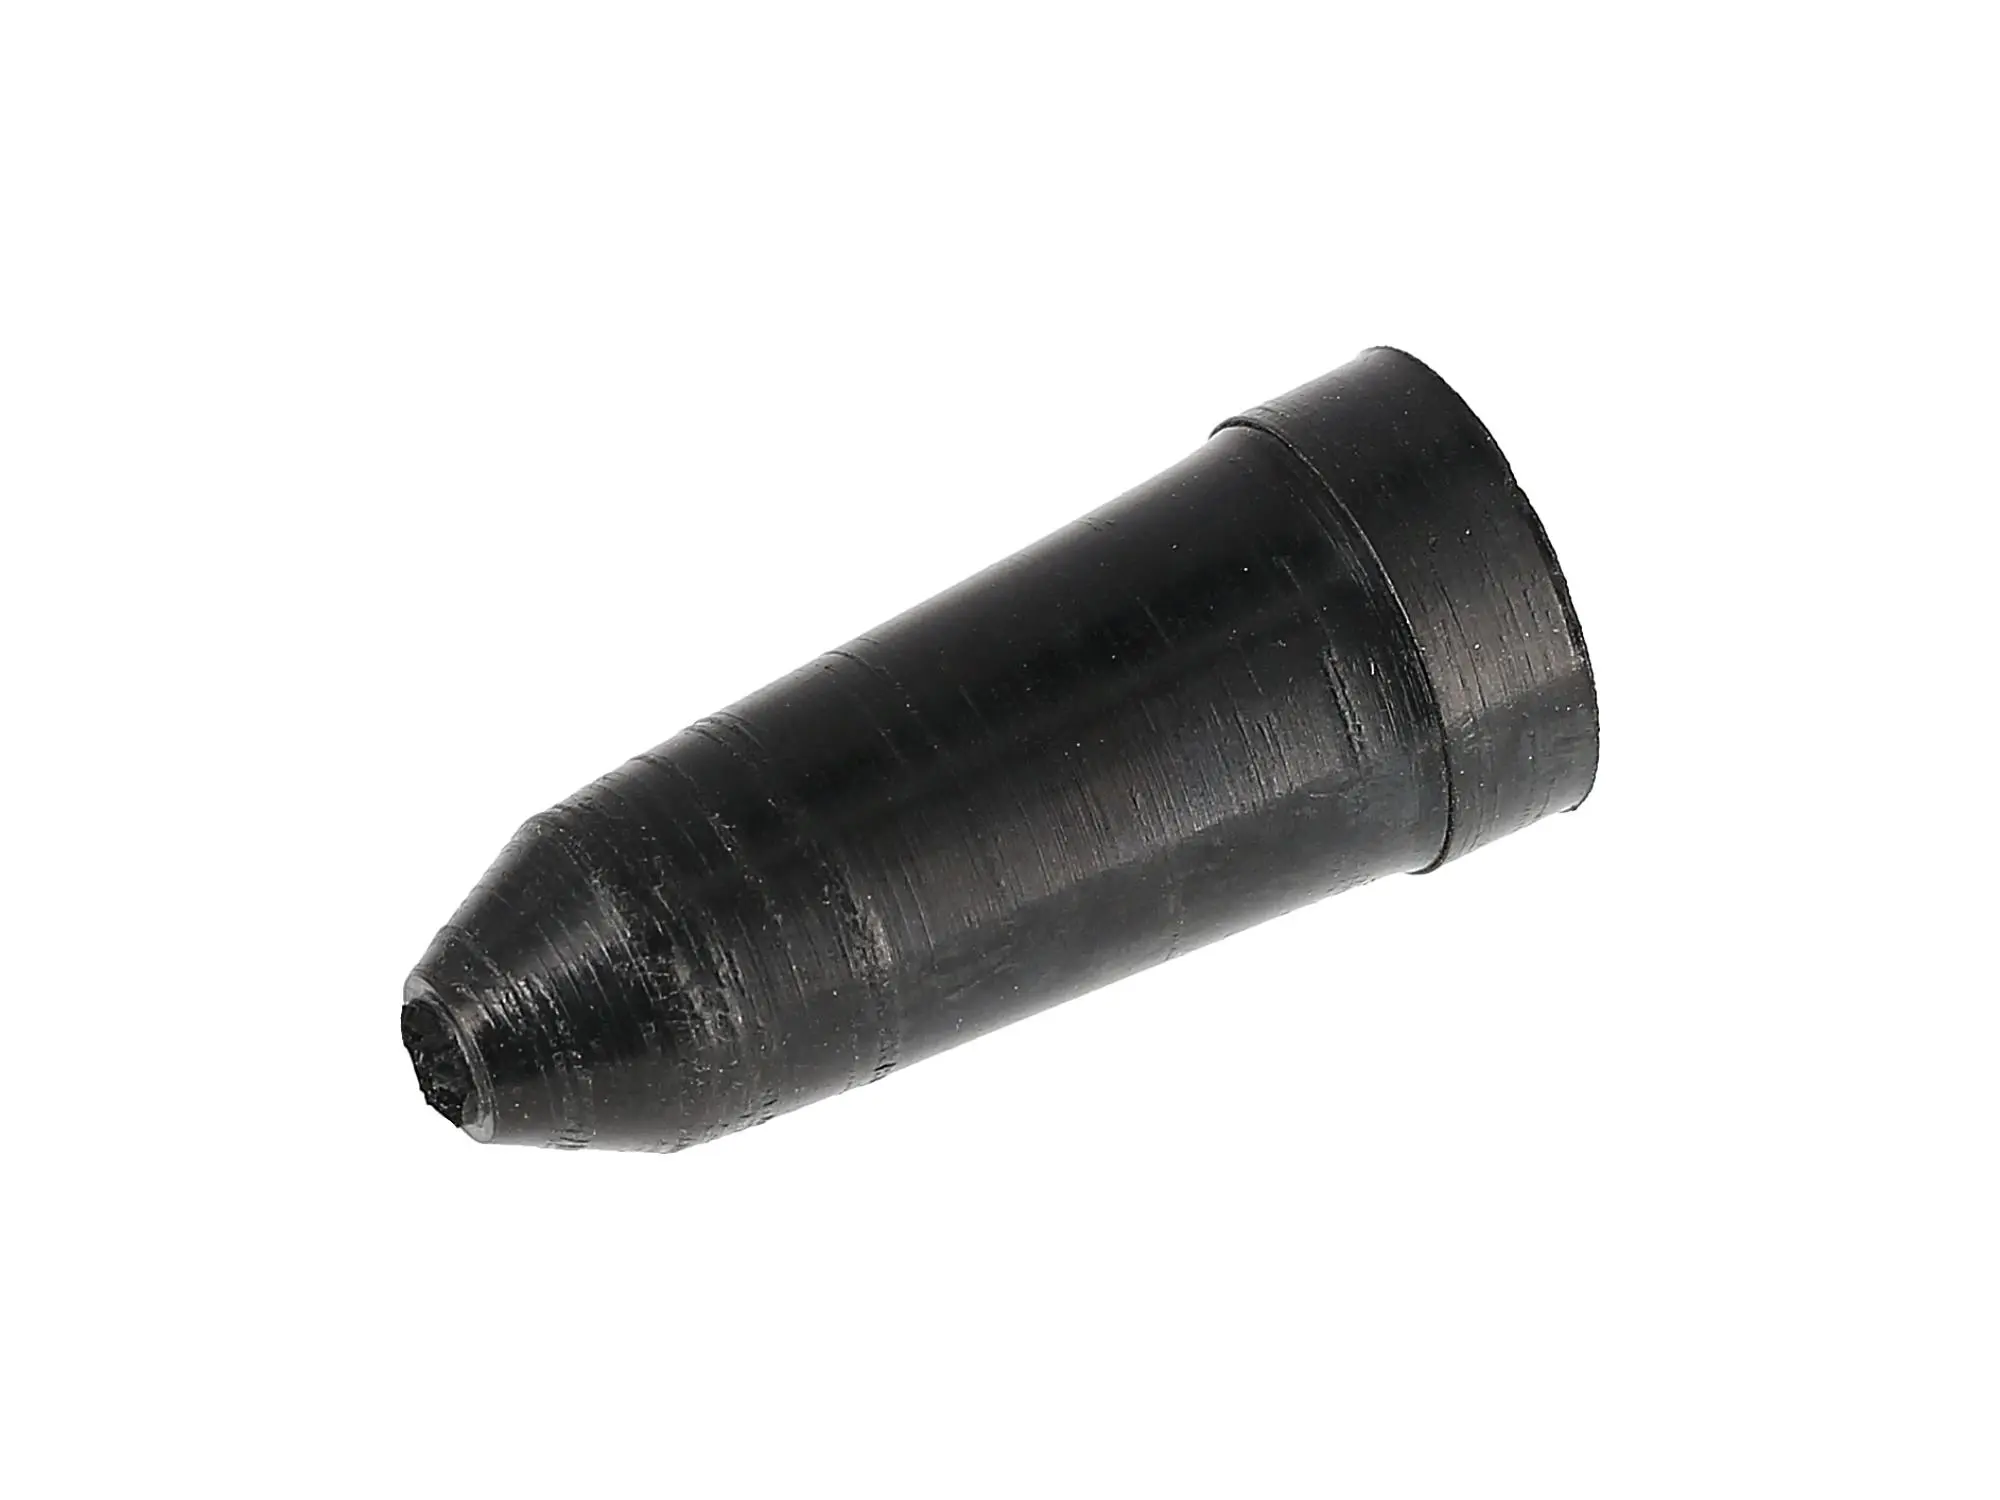 Gummi - Schutzkappe für Bremszug hinten ES, TS (Typ 2), Art.-Nr.: 10057110 - Bild 1